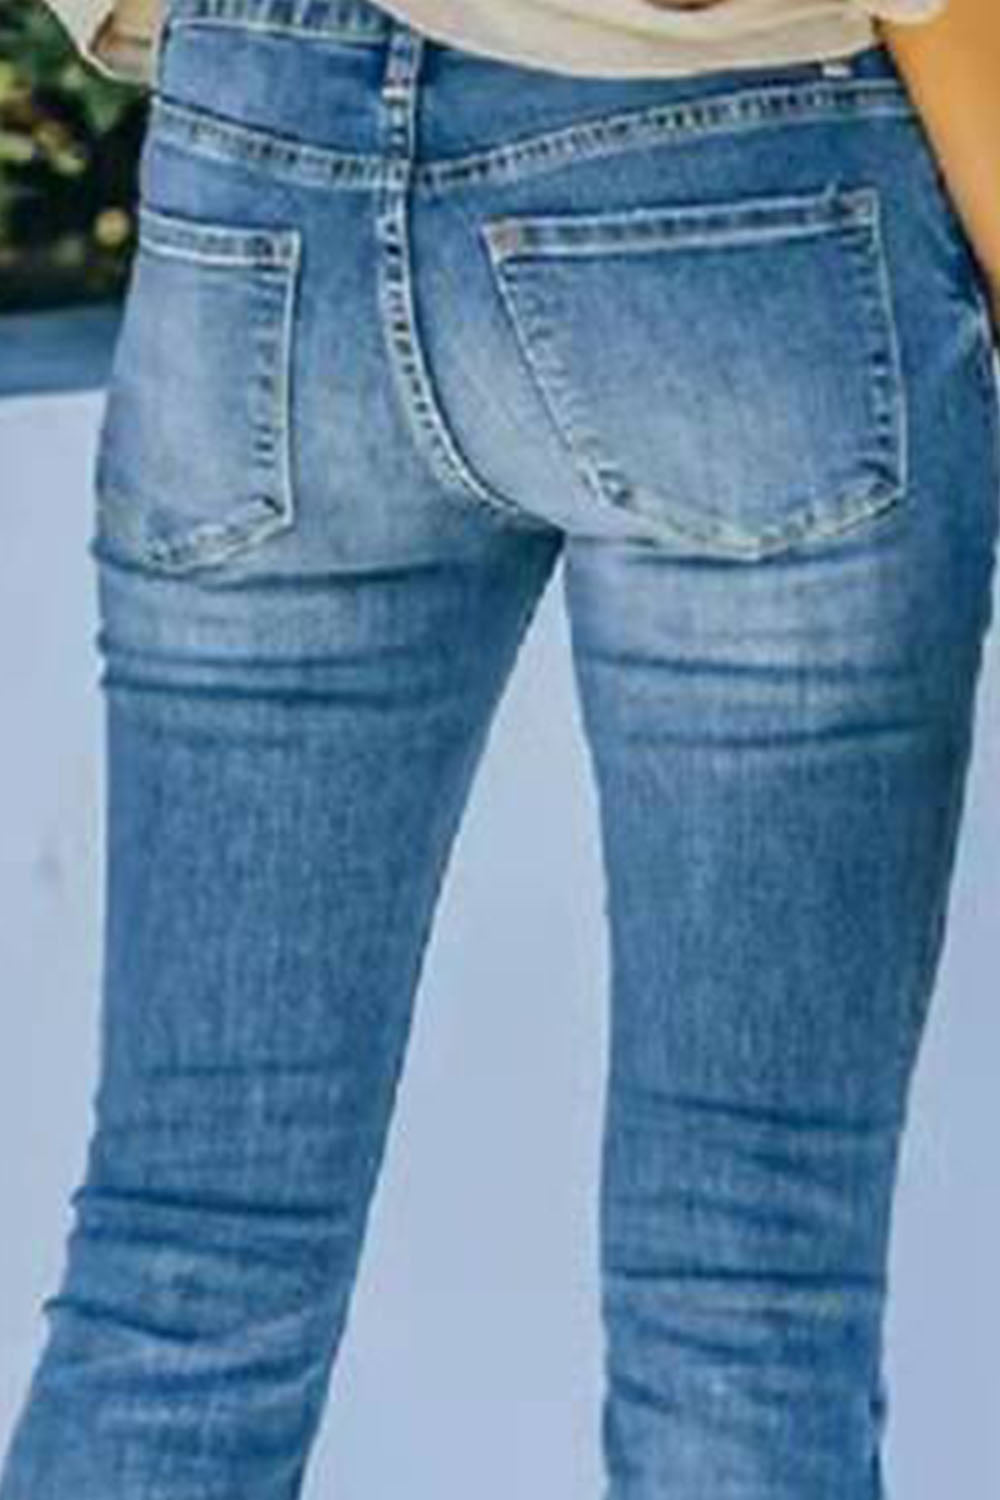 Wide Leg Long Jeans - skdzusa